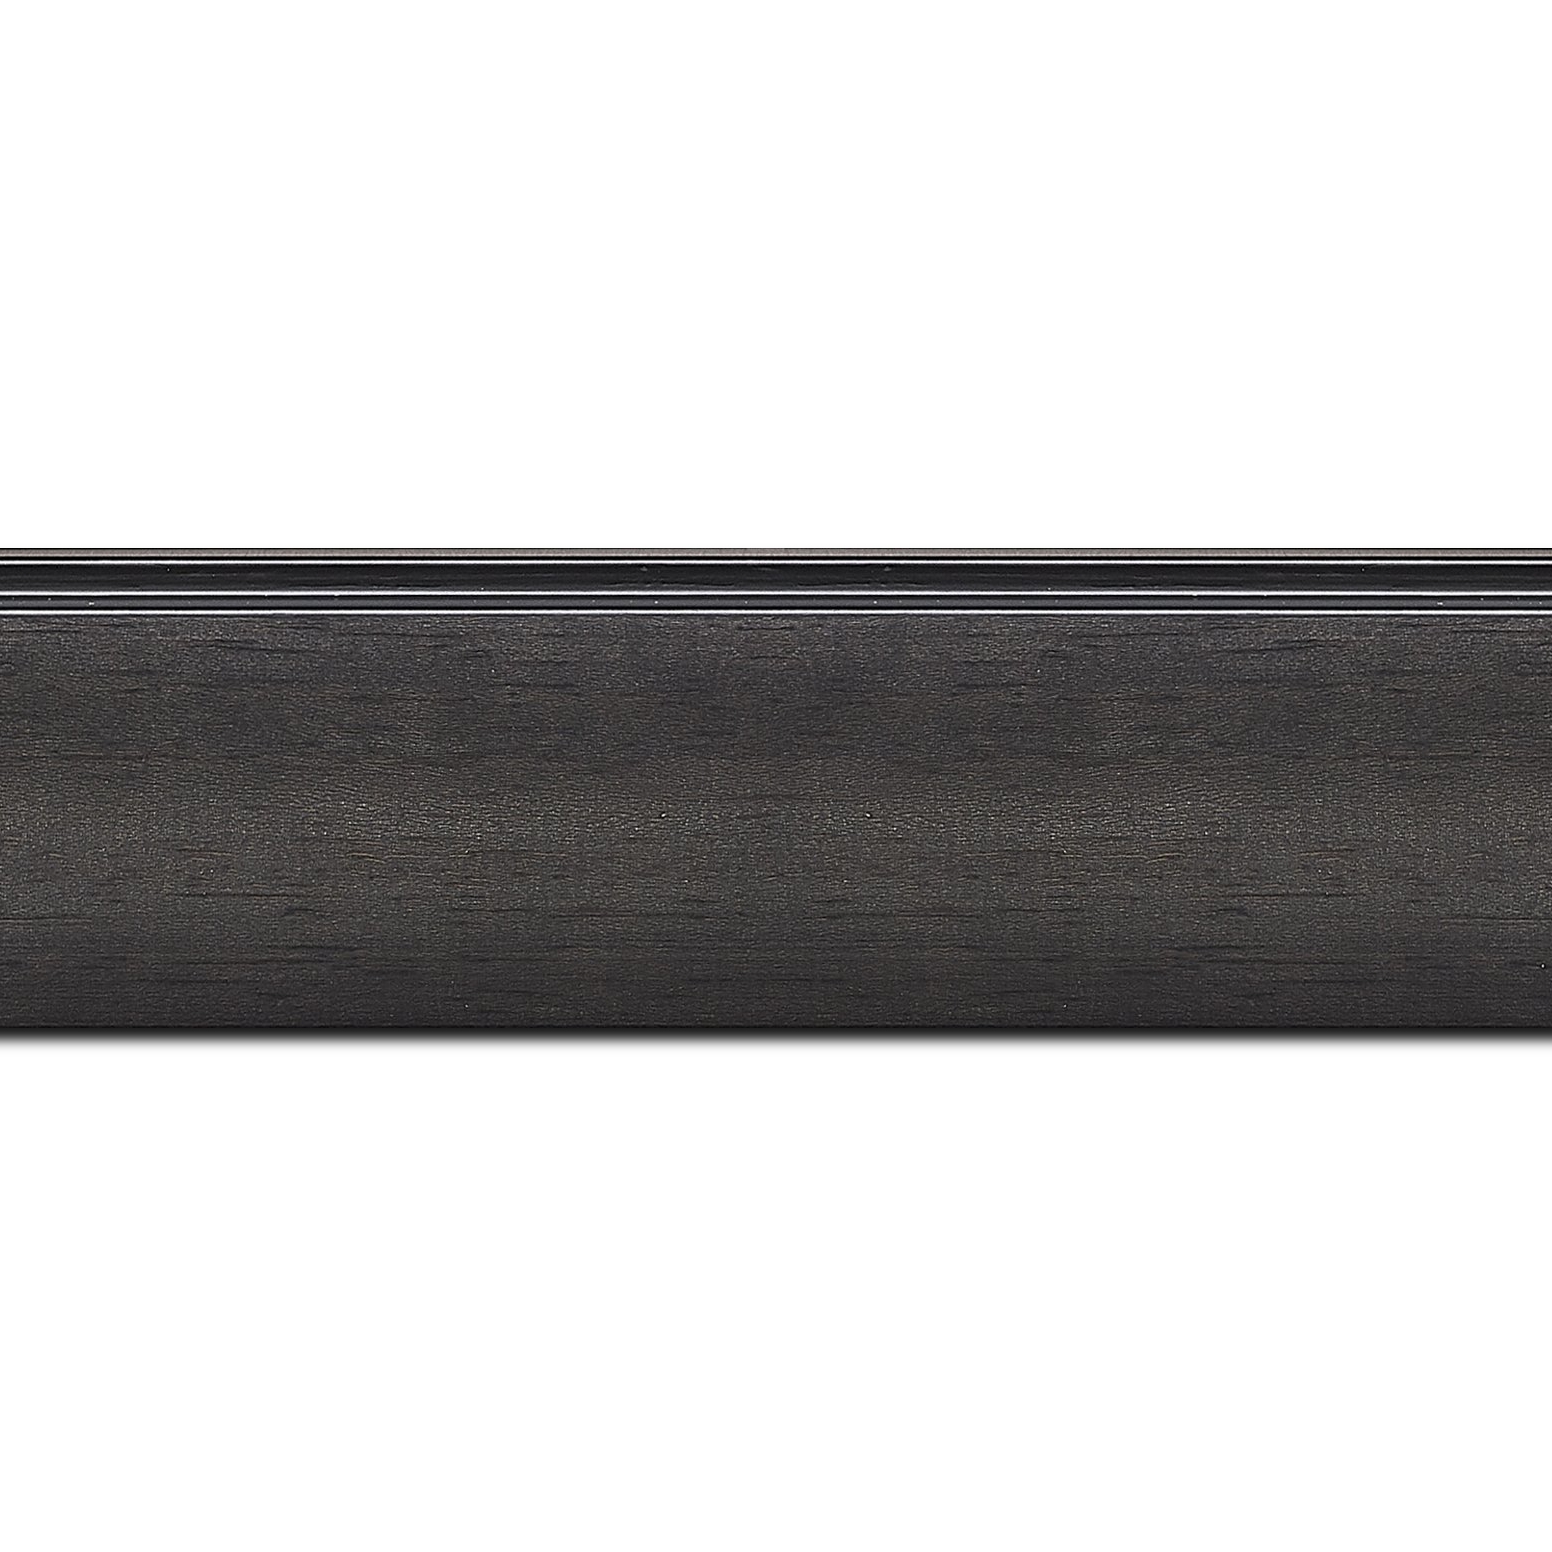 Baguette longueur 1.40m bois profil en pente méplat largeur 4.8cm couleur anthracite satiné surligné par une gorge extérieure noire : originalité et élégance assurée